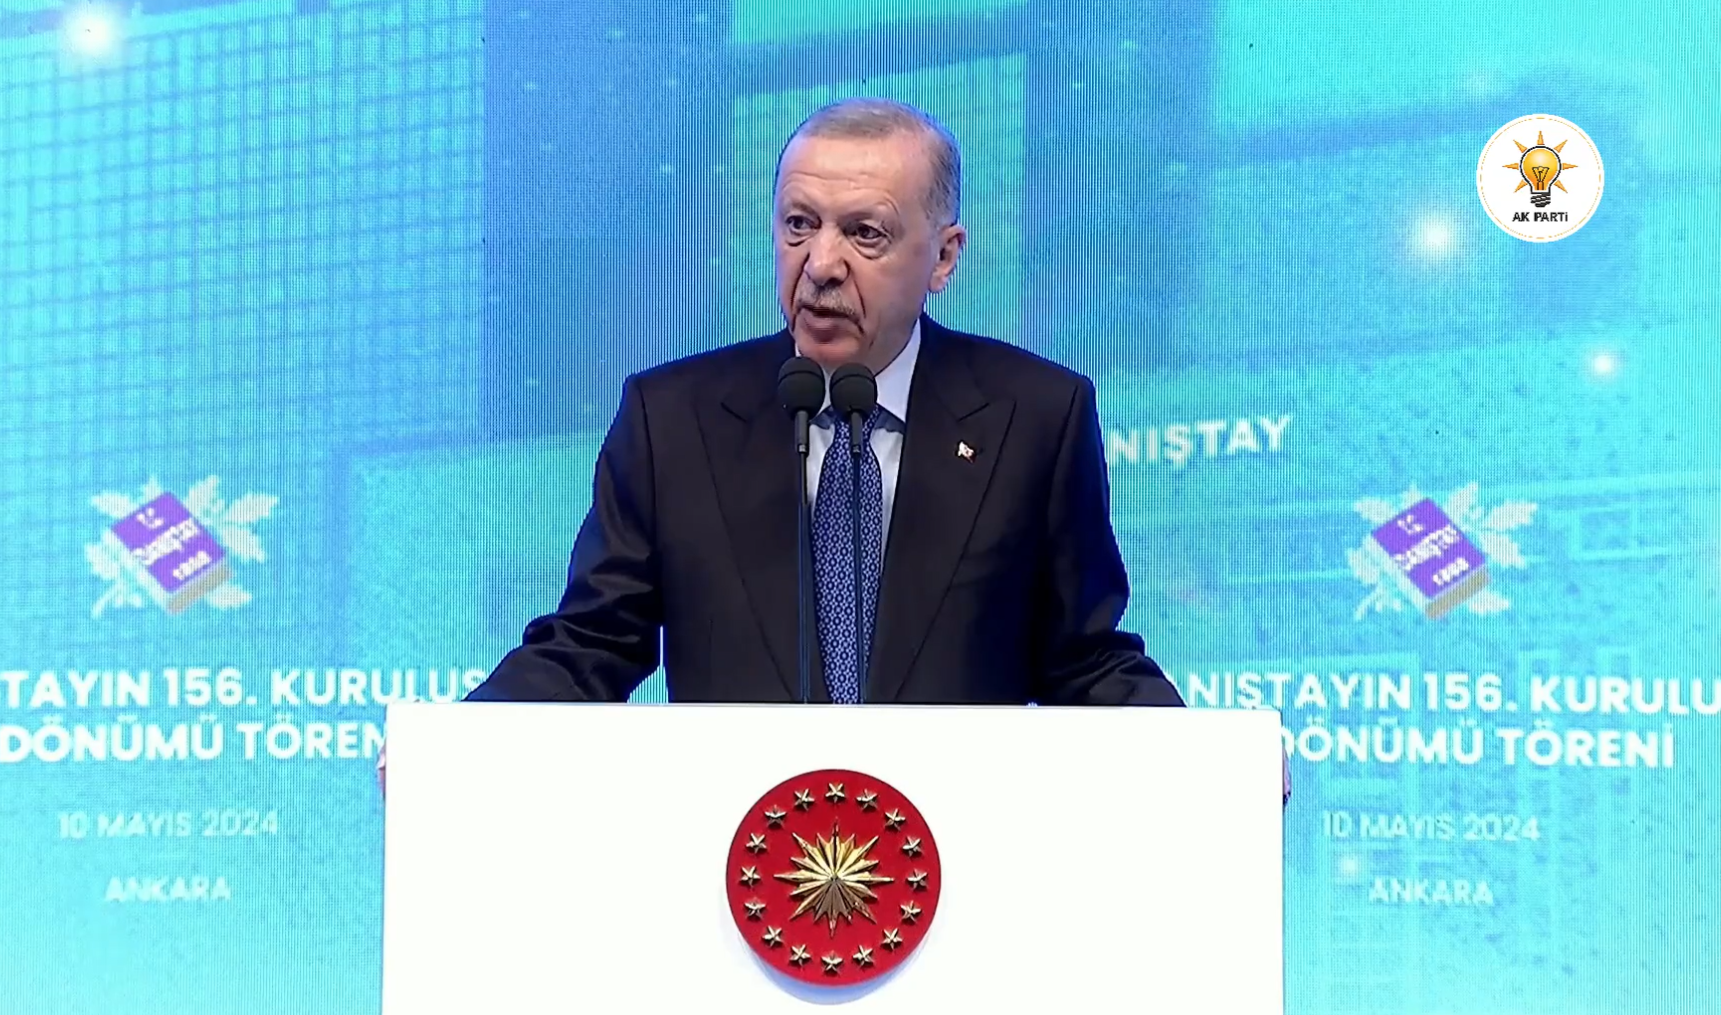 Erdoğan, Danıştay’ın 156. Kuruluş Yıldönümü Töreni'nde konuştu